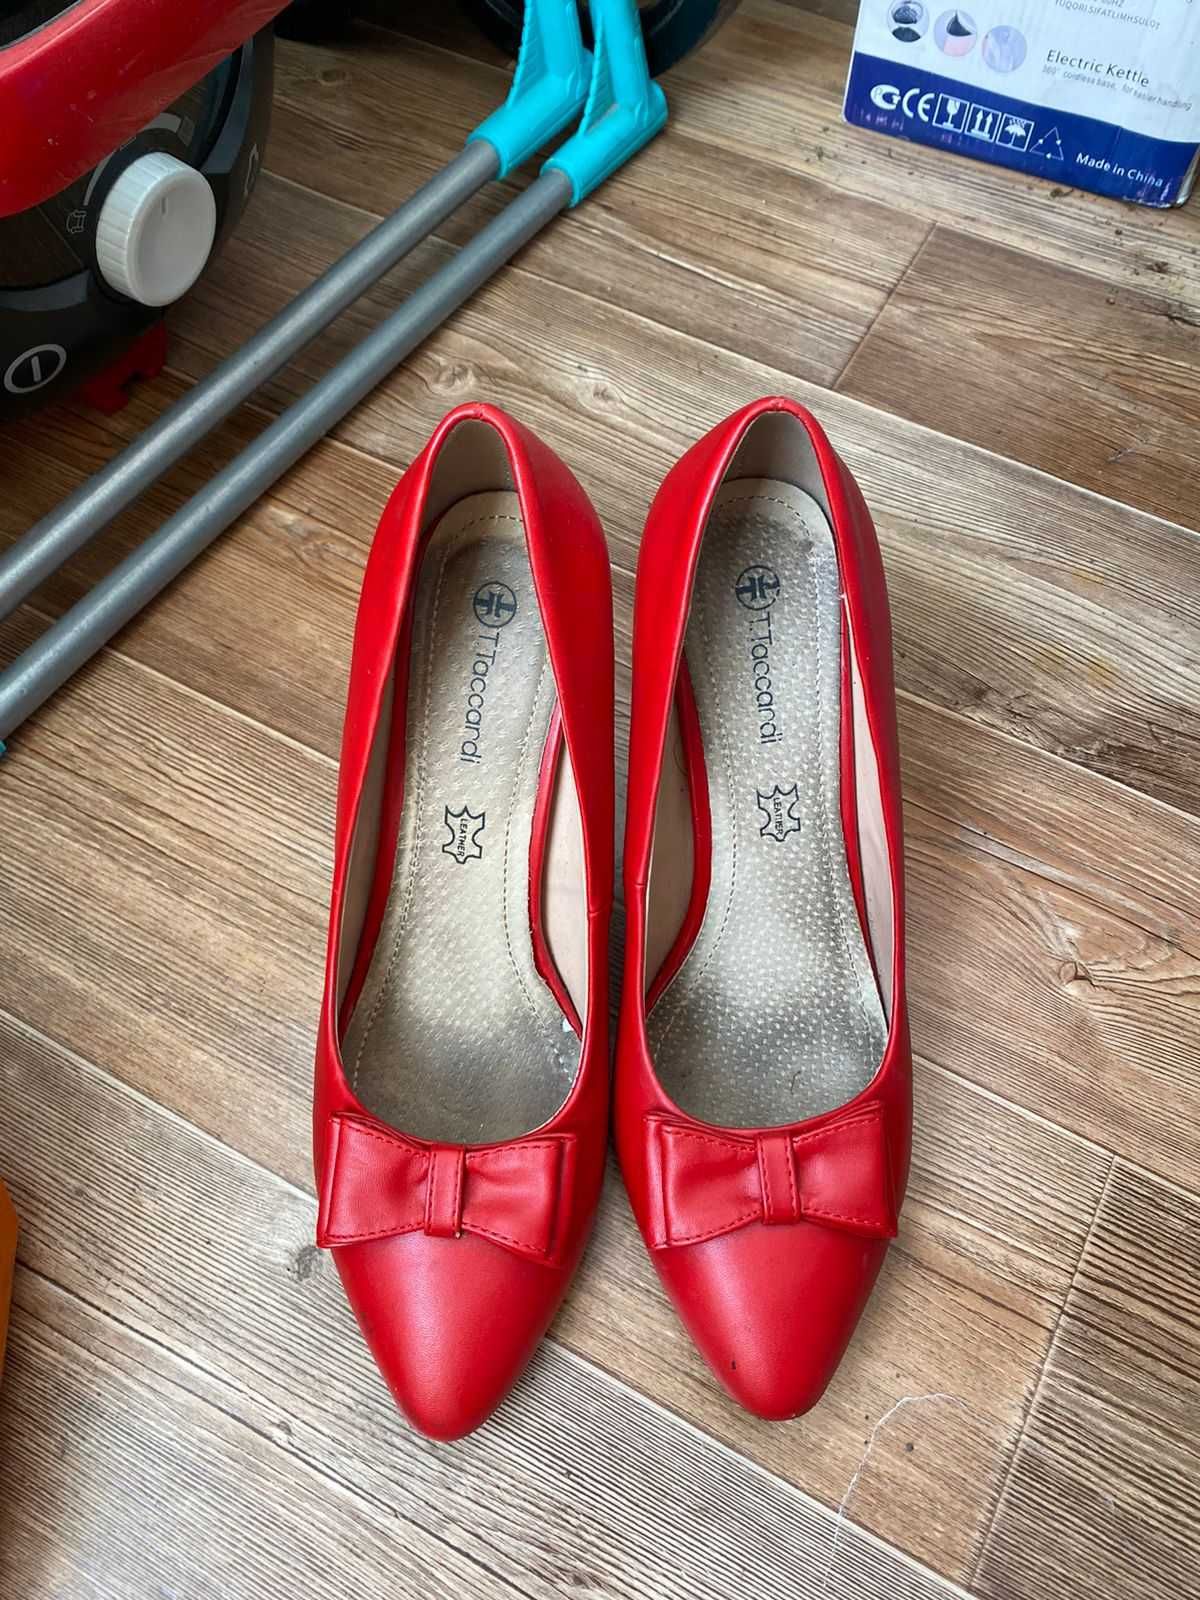 Женская обувь ( туфли, сапоги) размер все 39